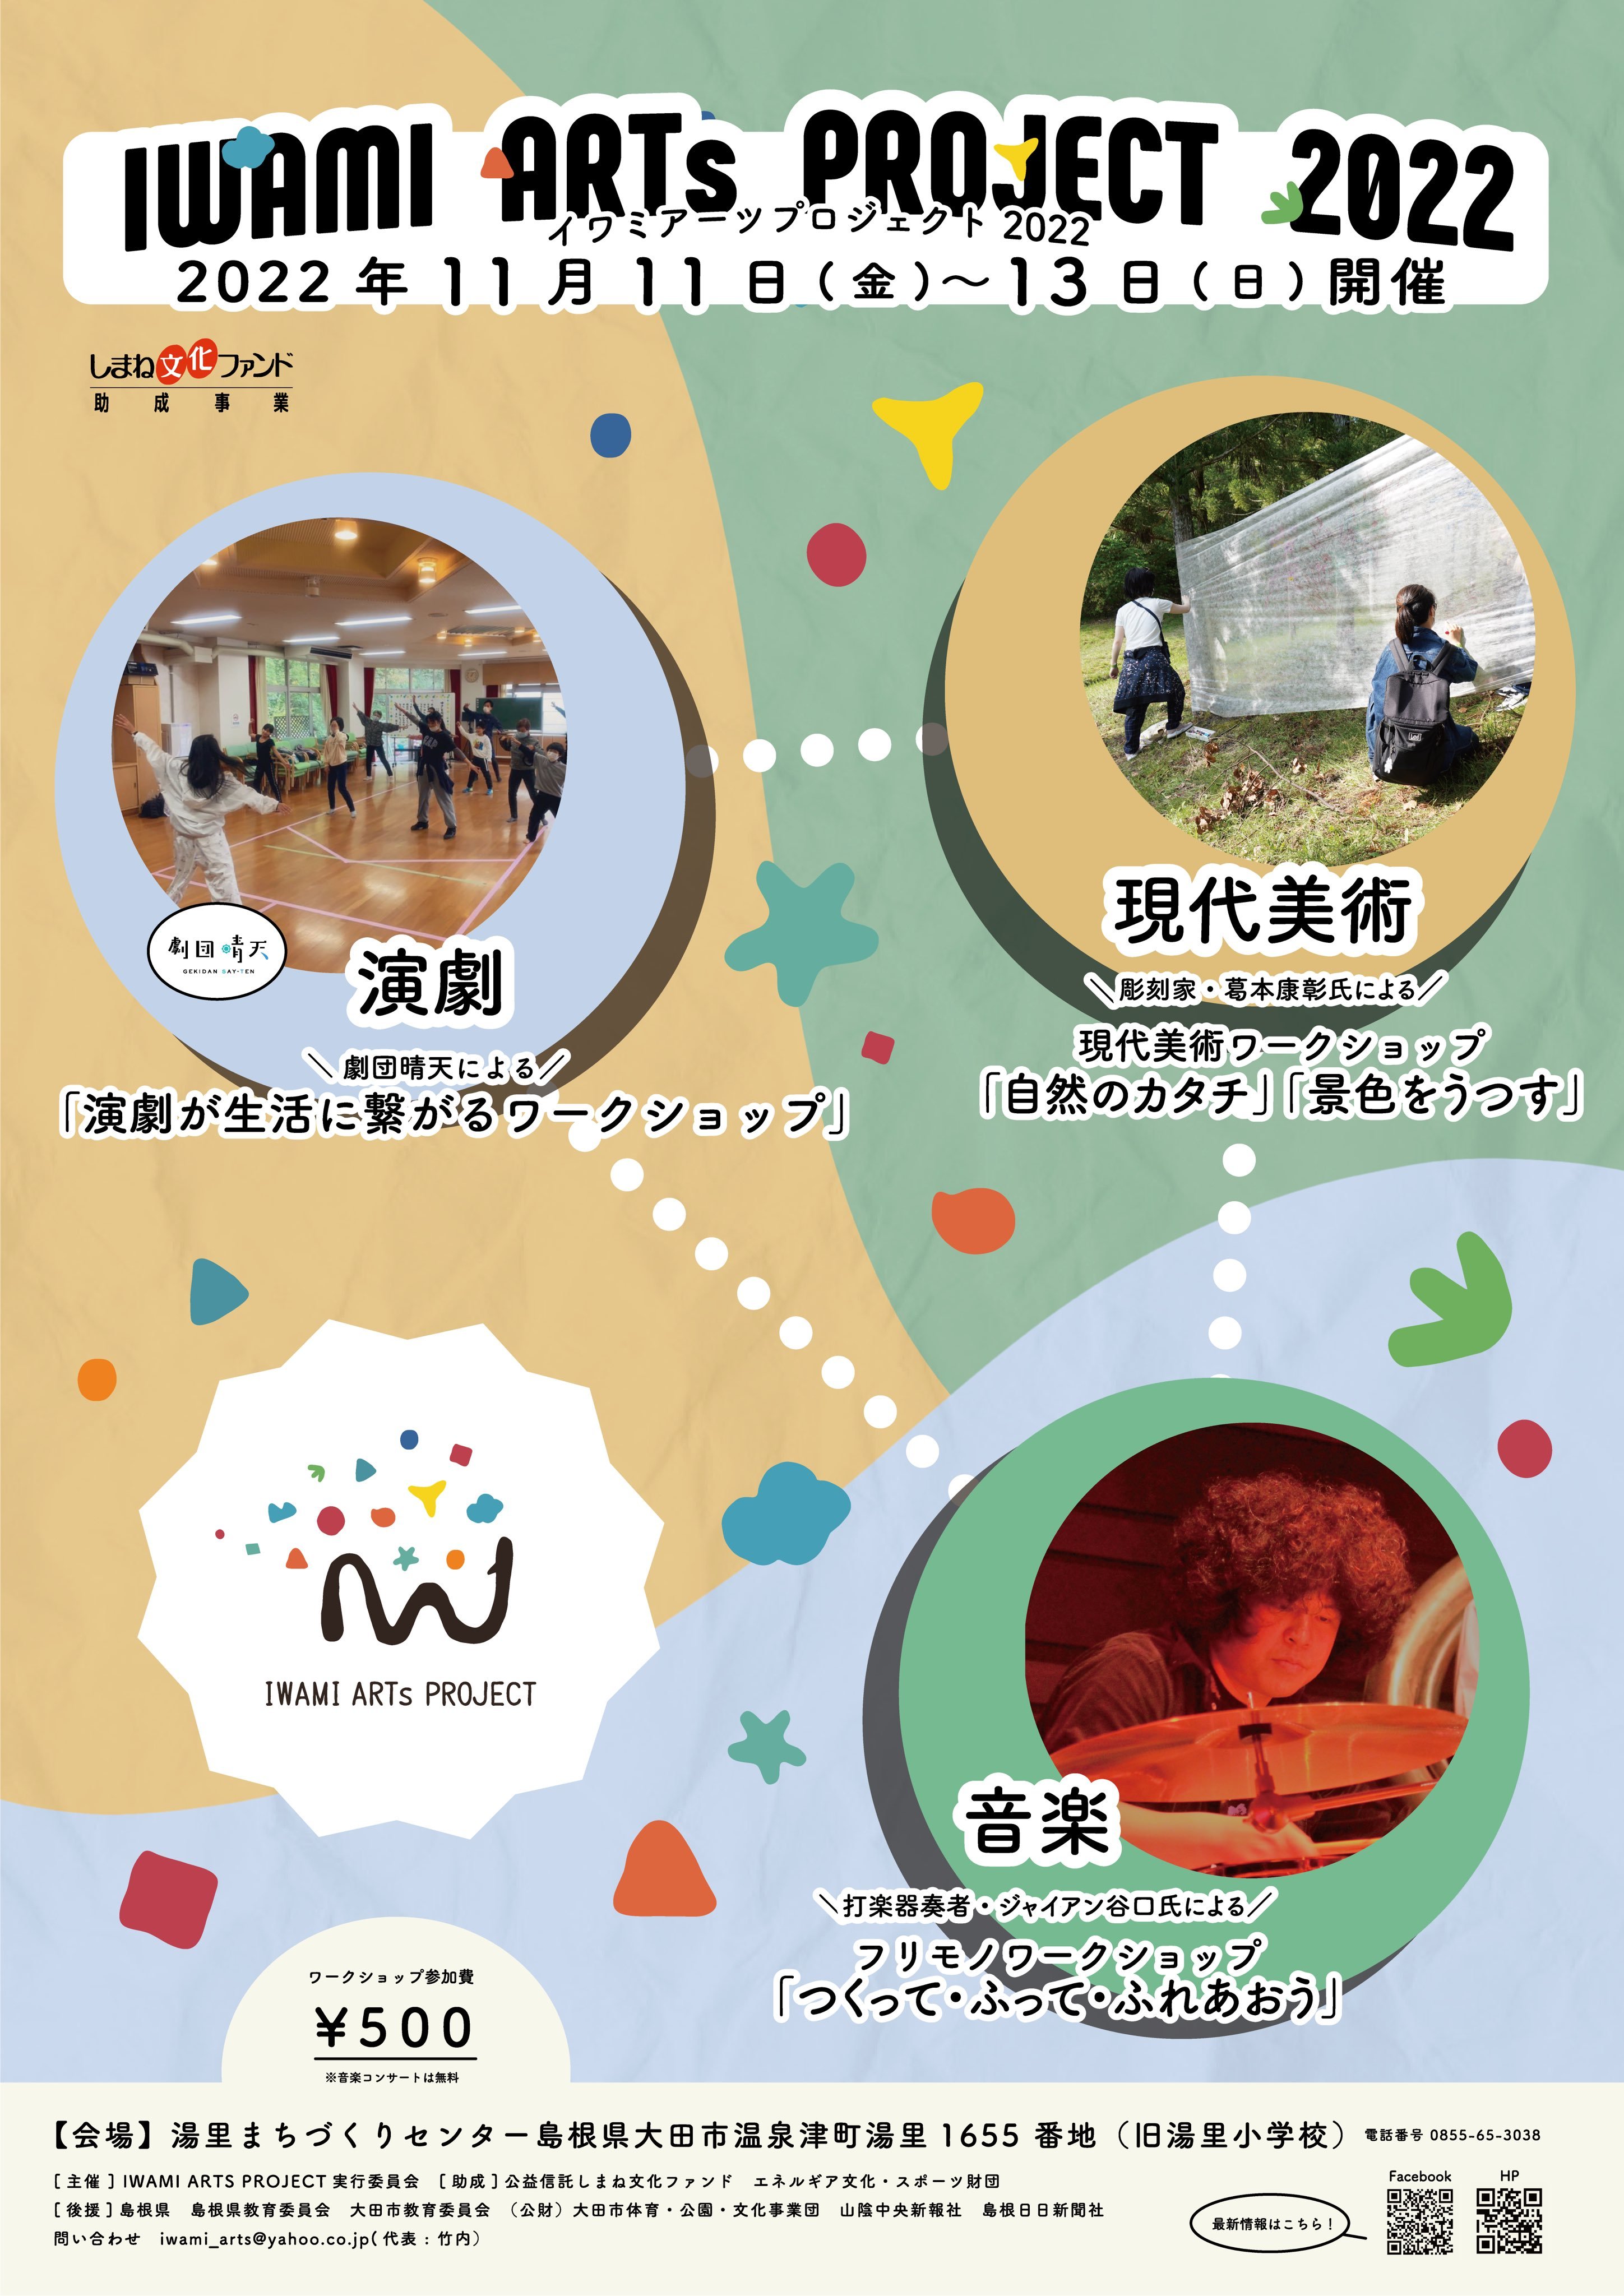 世界遺産の町 島根県大田市温泉津町でプロが教える
芸術ワークショップ『IWAMI ARTS PROJECT 2022』を
11月11日～13日に開催